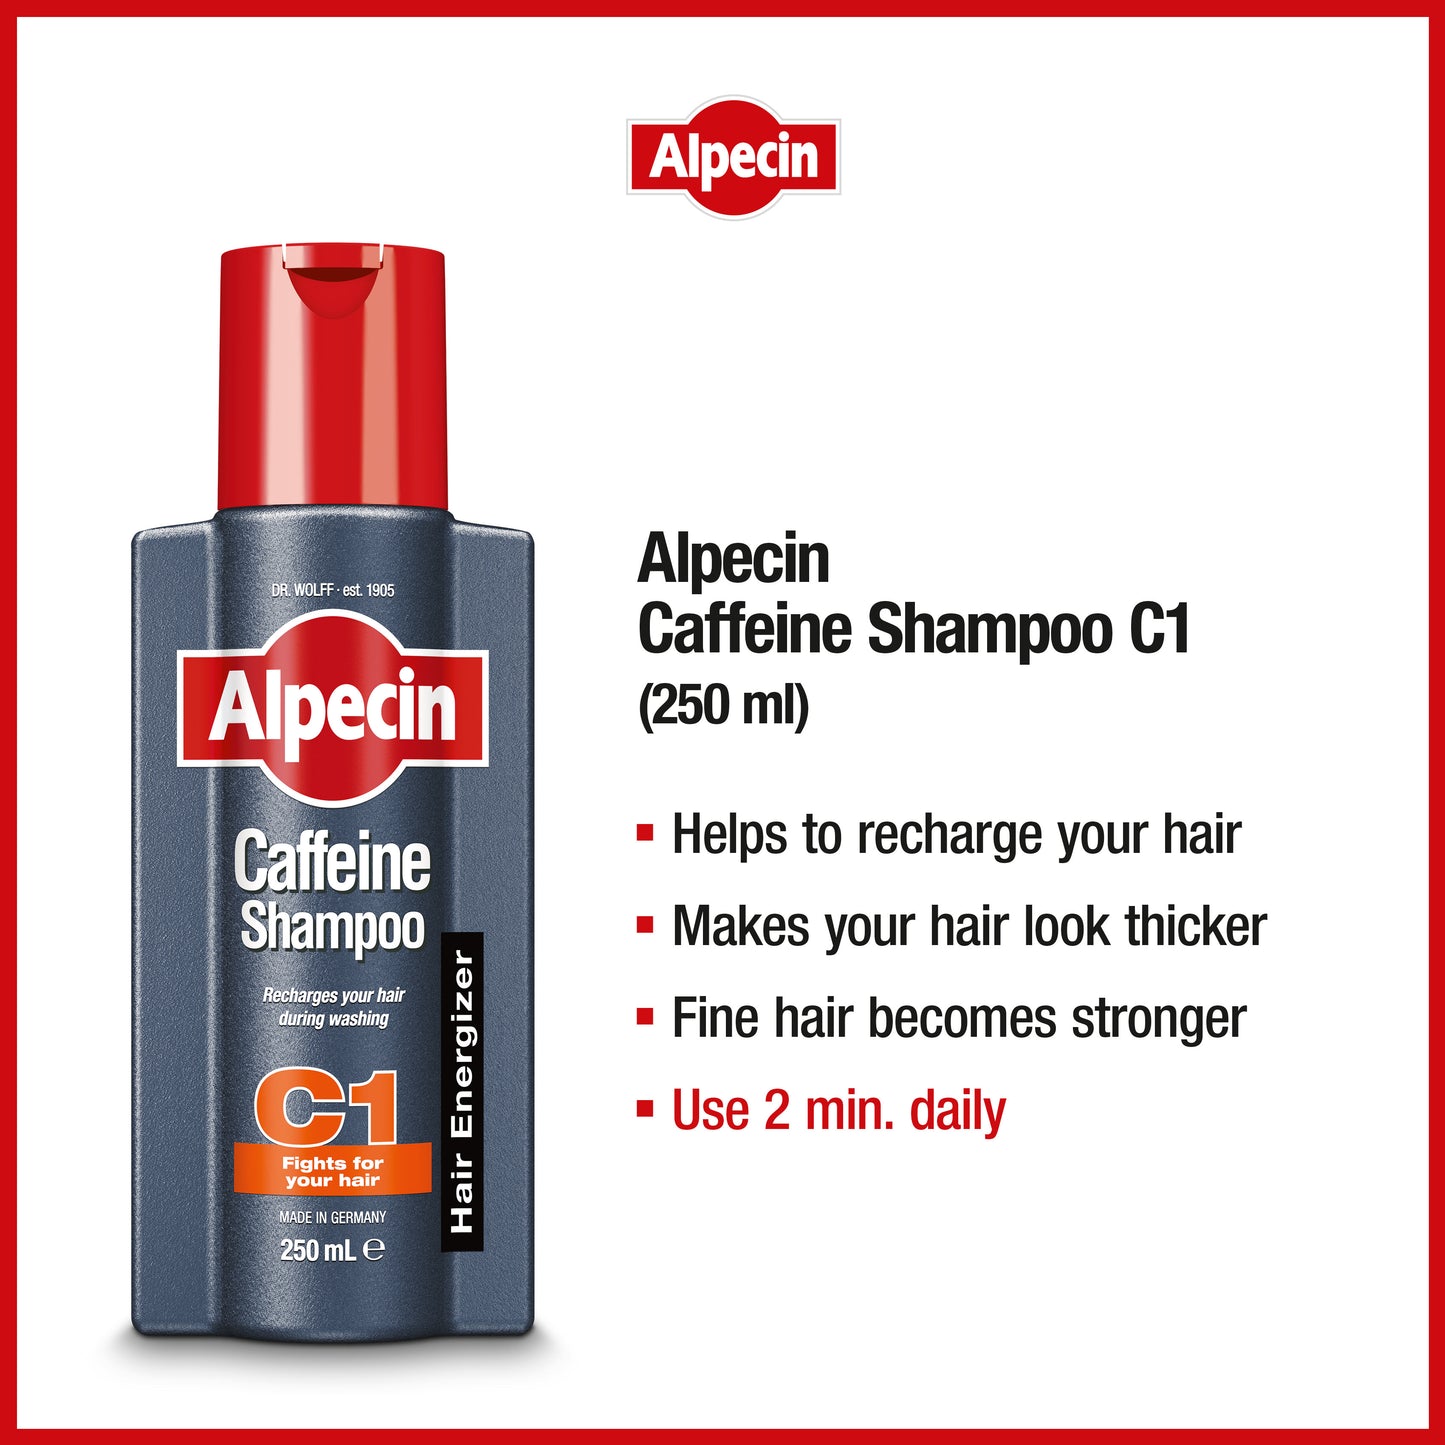 Alpecin Caffeine Shampoo C1 - For Stronger Hair, 250ml